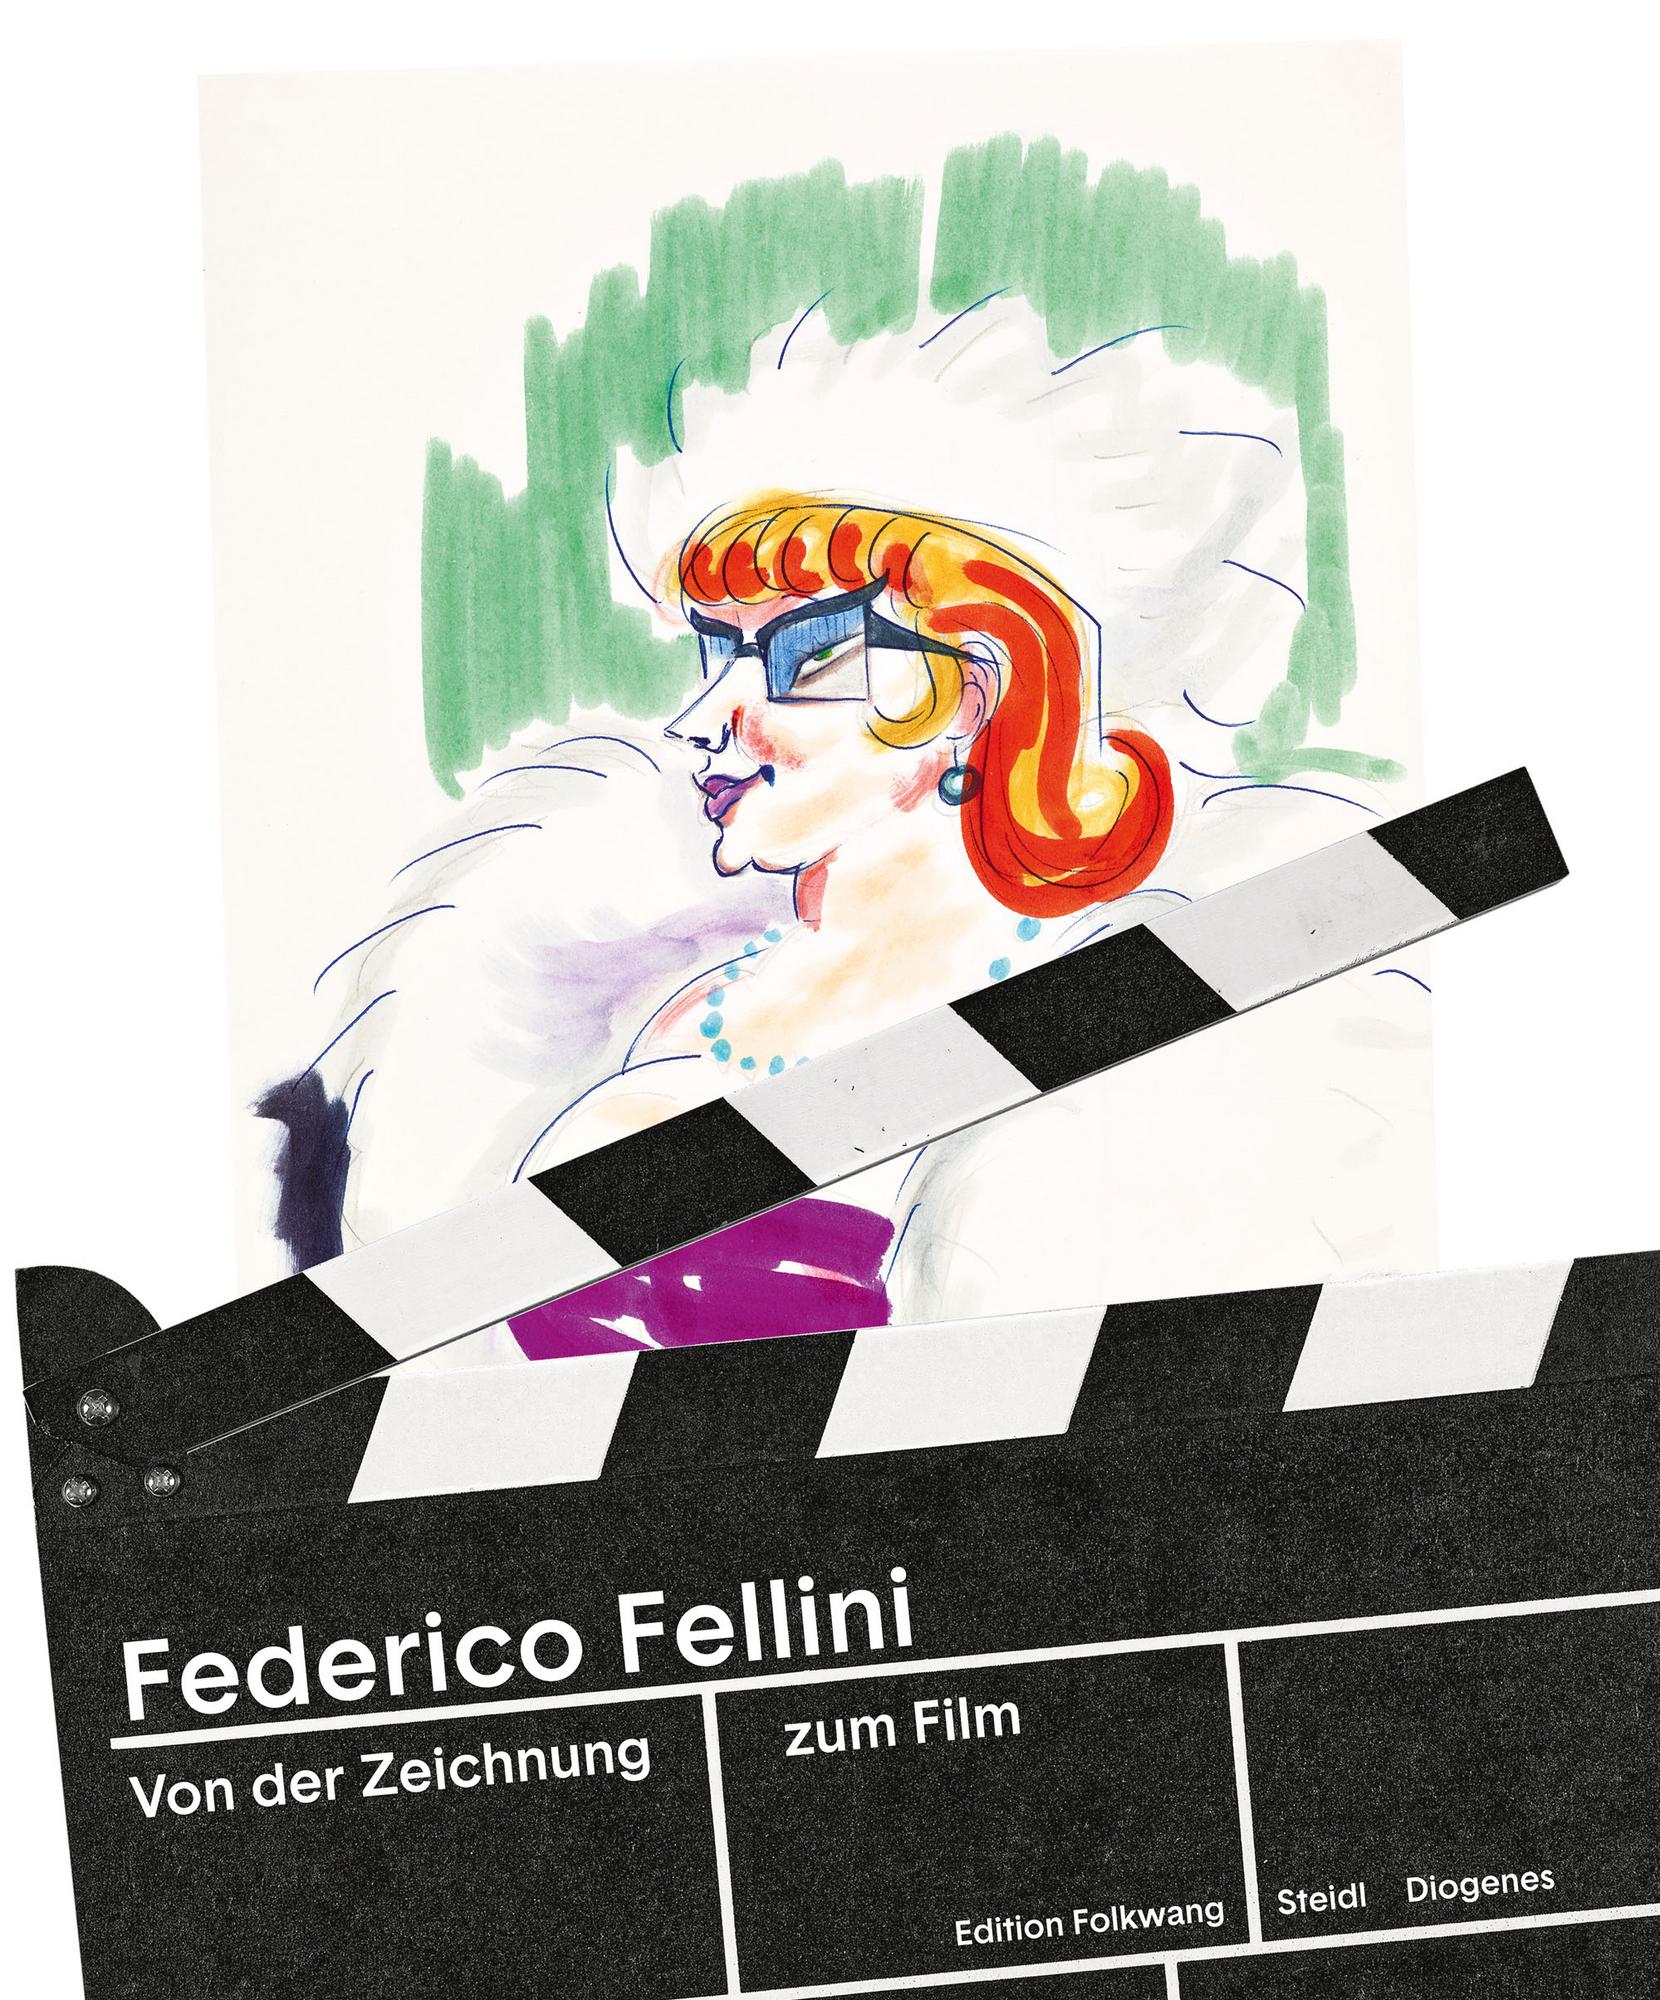 <p>Fellini in Zürich</p>
